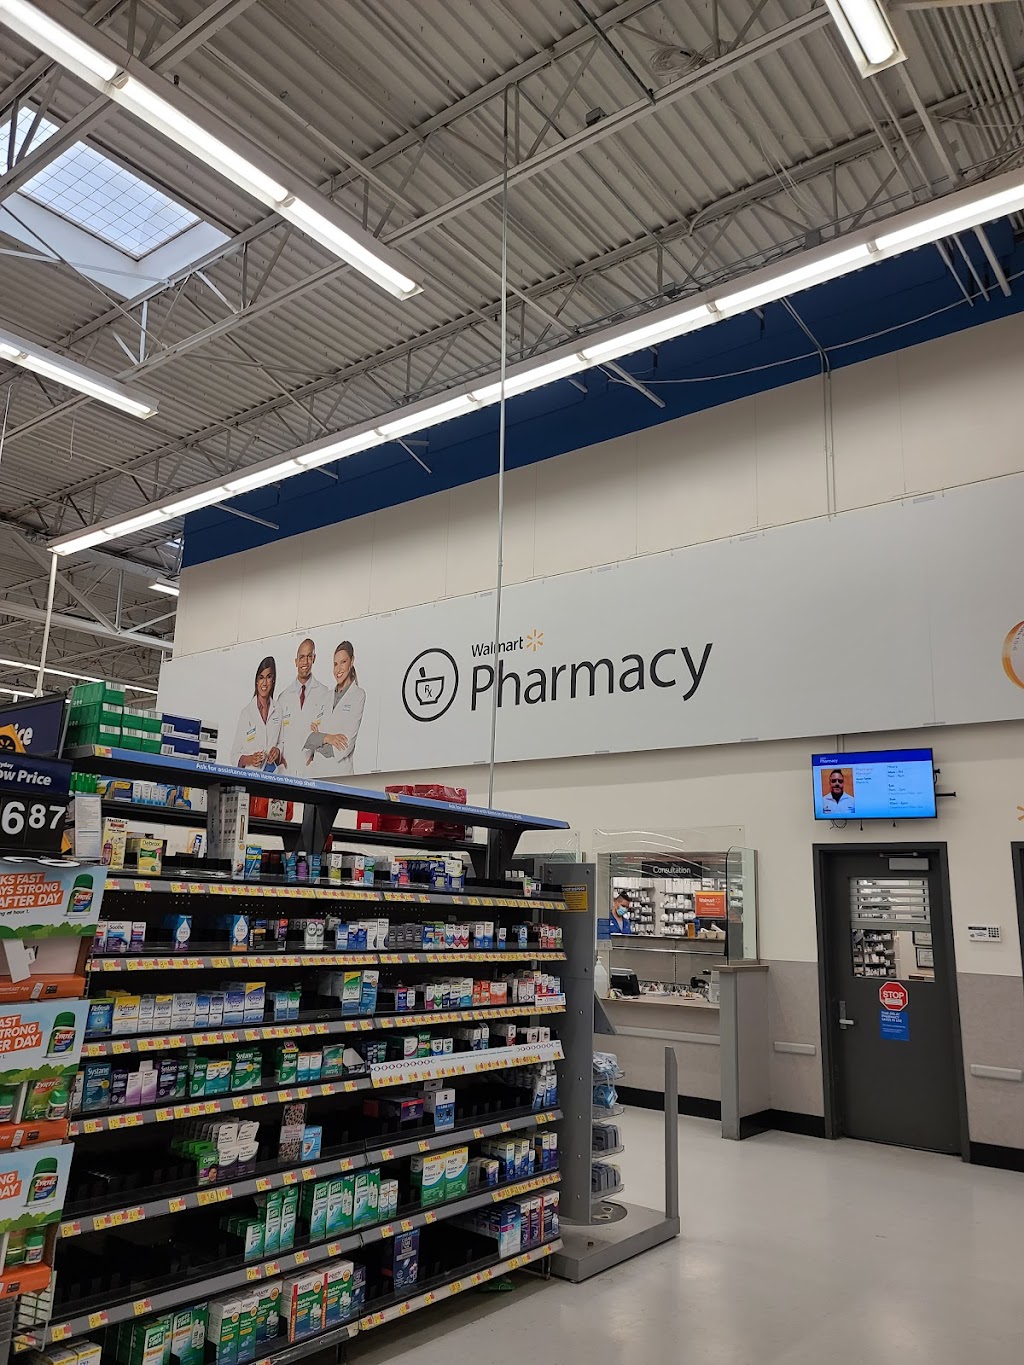 Walmart Pharmacy | 41 Anawana Lake Rd, Monticello, NY 12701 | Phone: (845) 796-7200